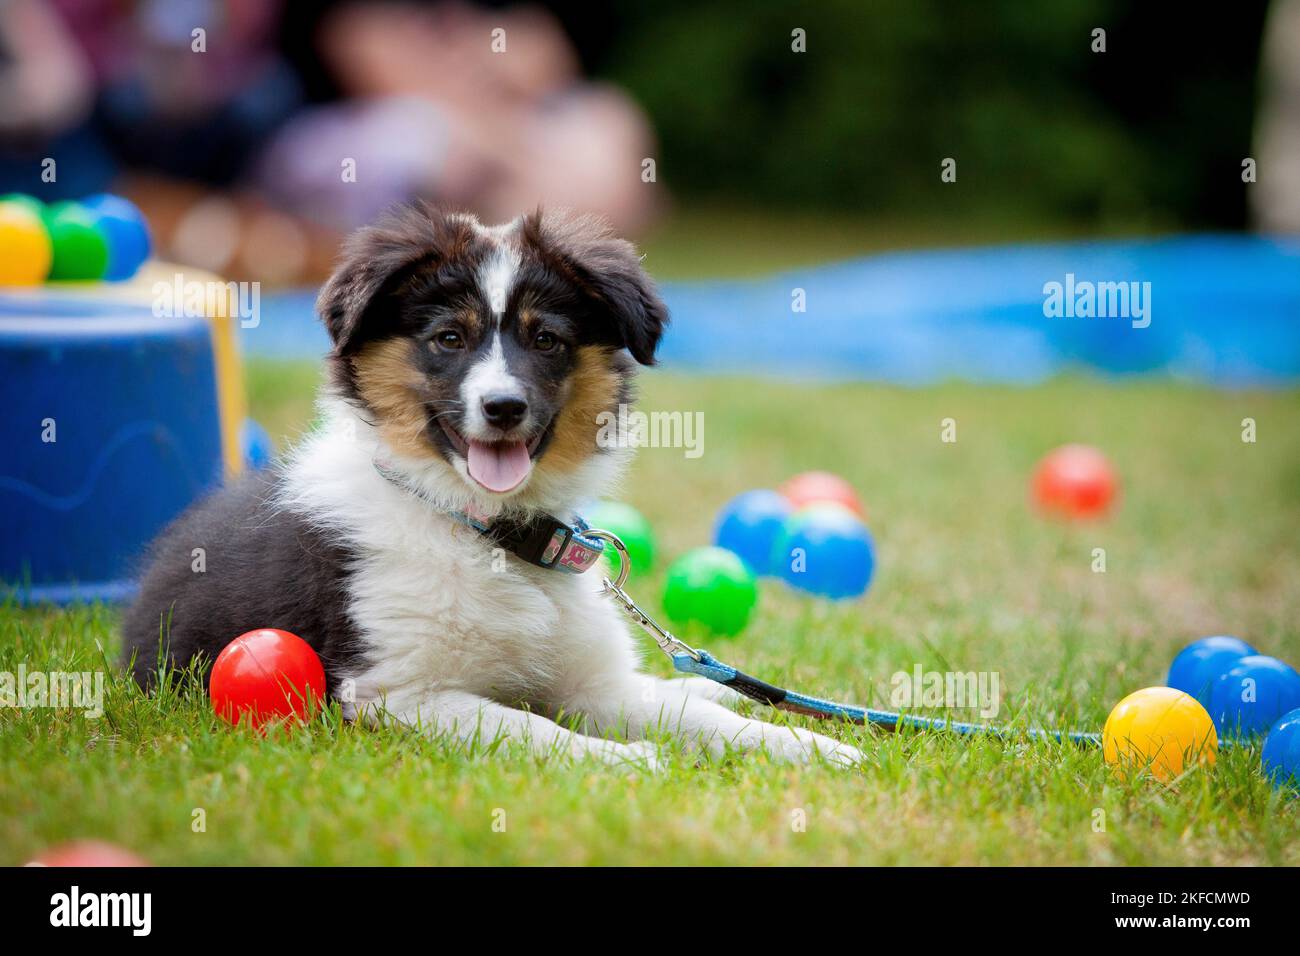 dog obedience school Stock Photo - Alamy